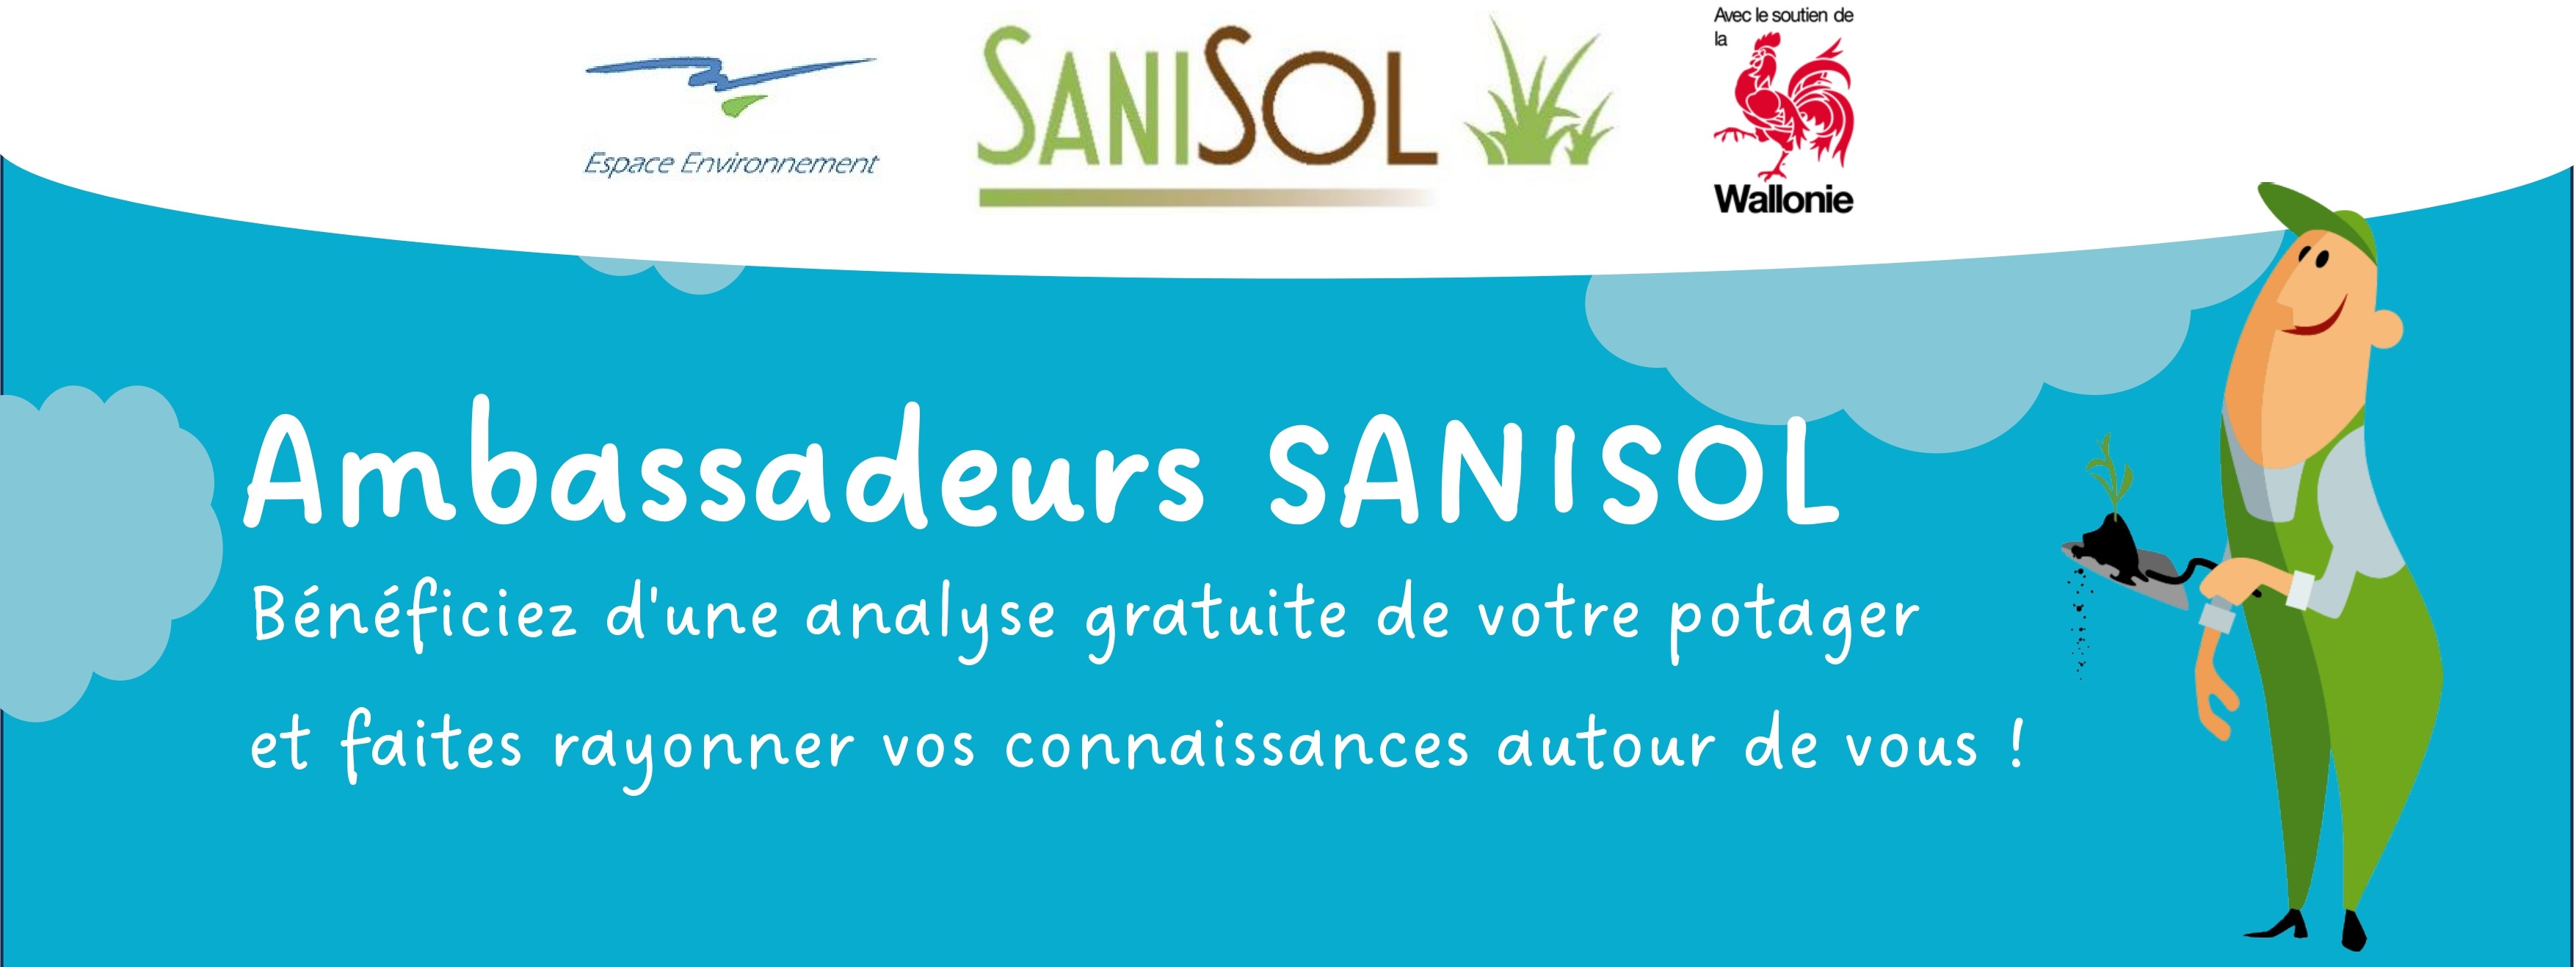 Sanisol_Ambassadeurs_banner.jpg